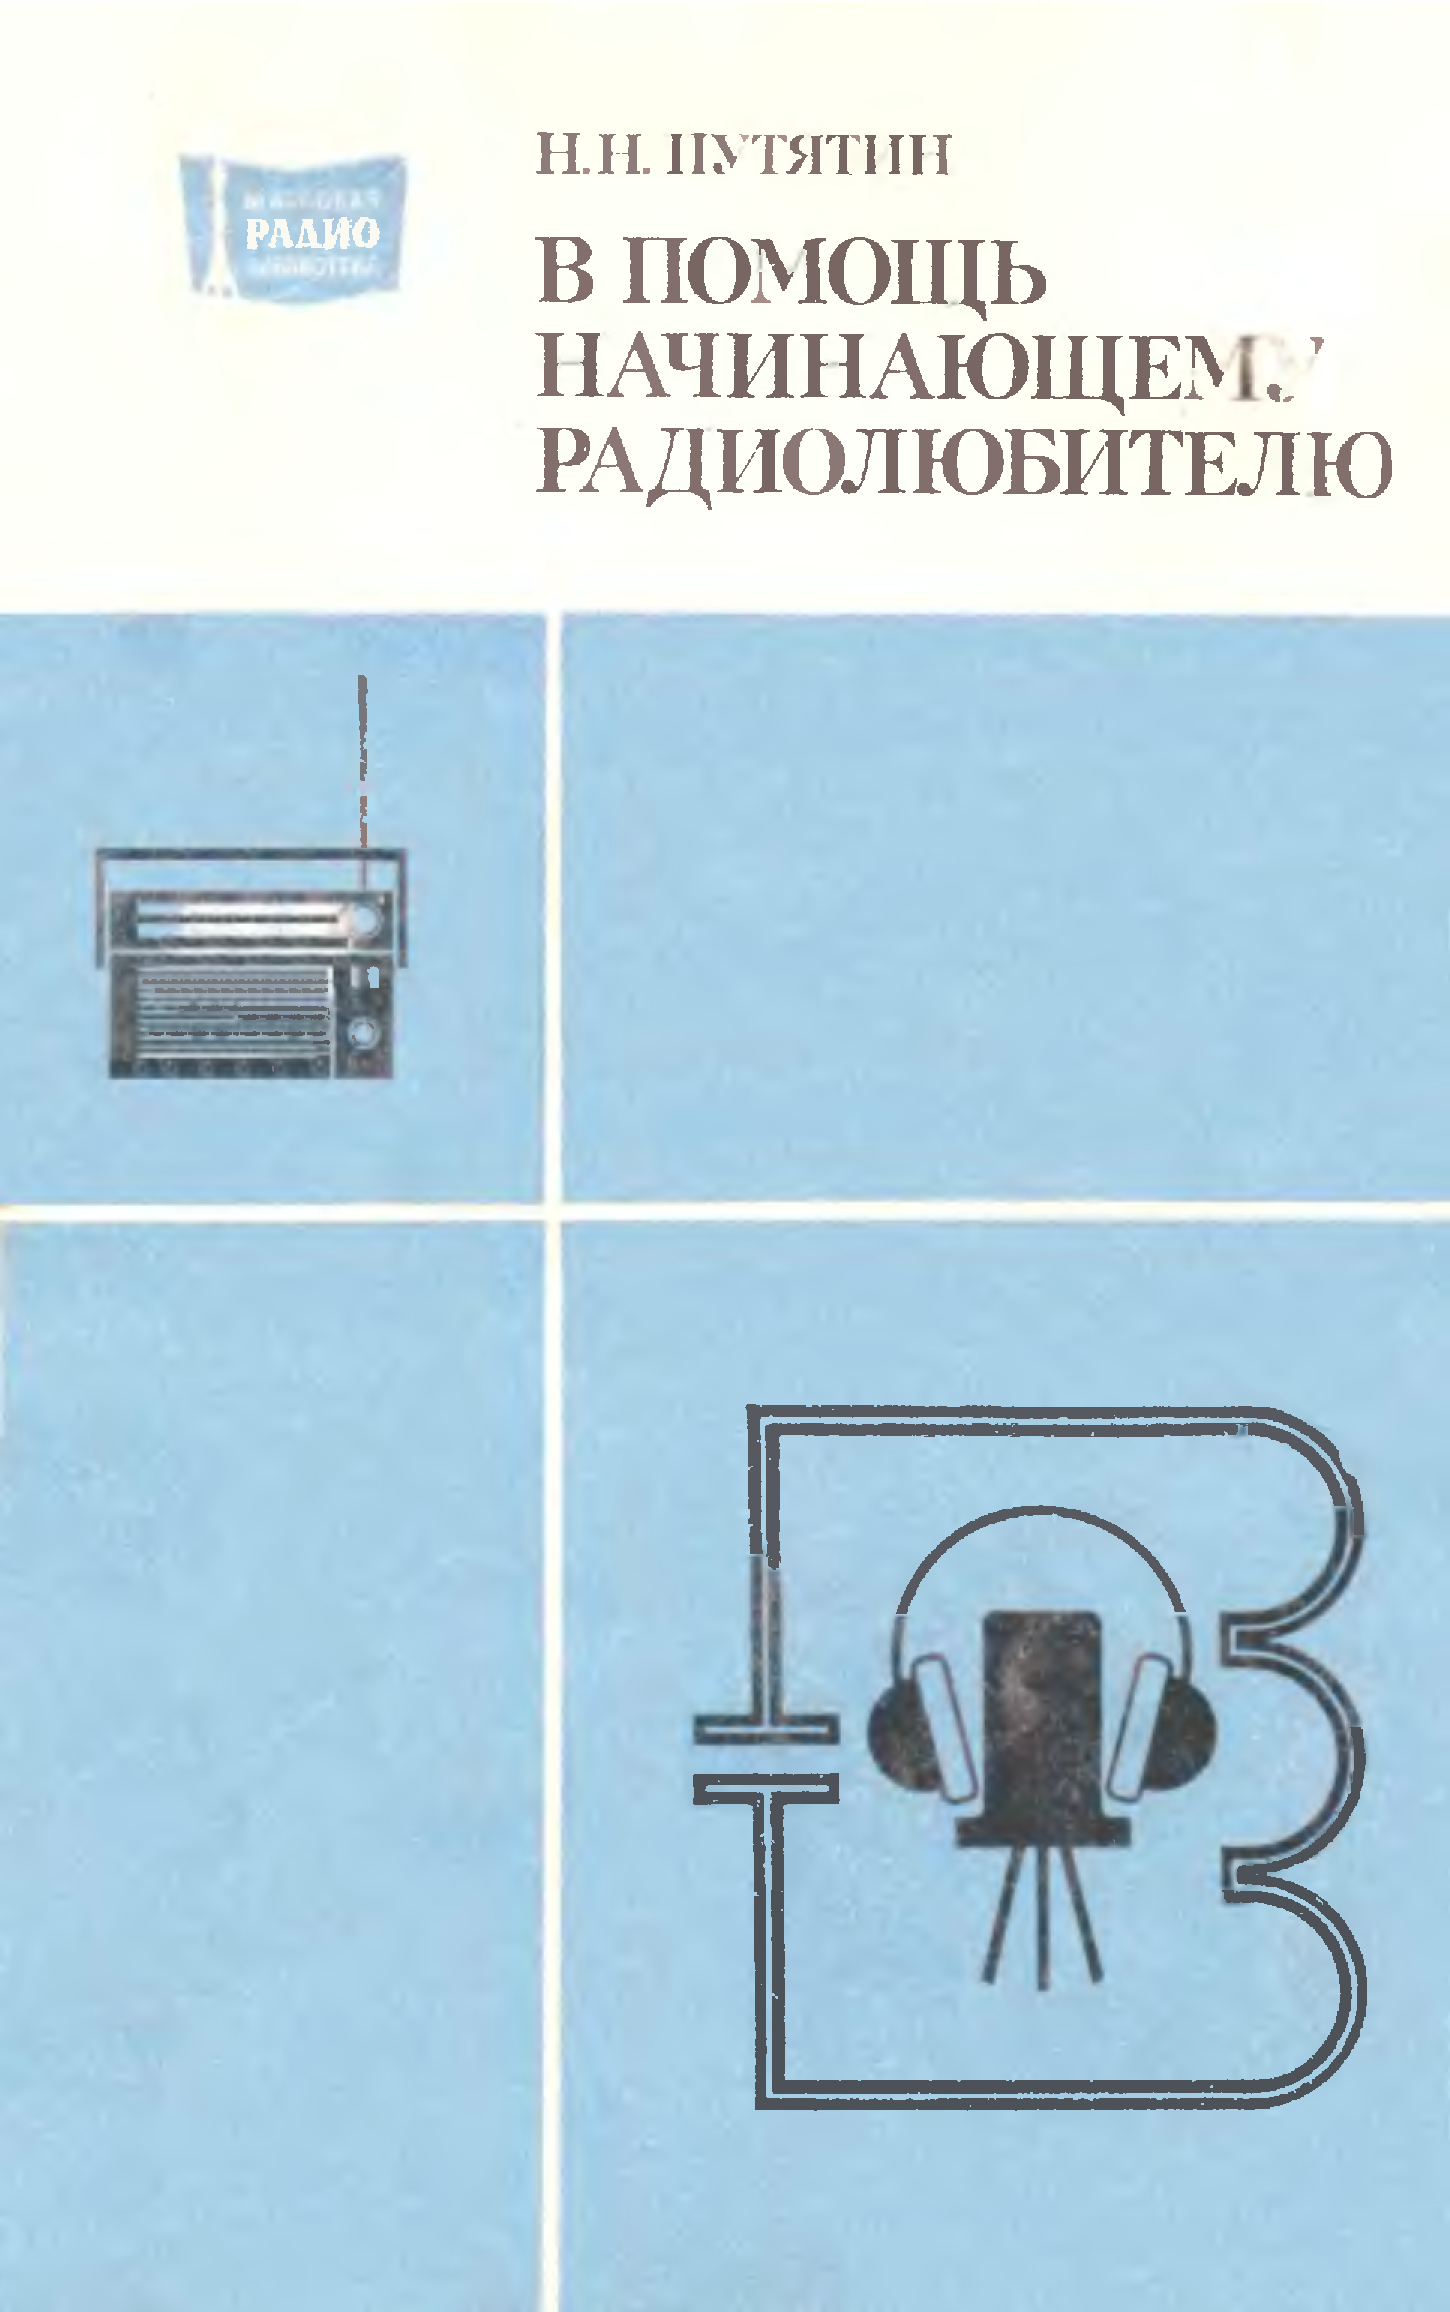 Книга начинающего радиолюбителя. Борисов практикум начинающего радиолюбителя. Начинающий Радиолюбитель книга. Книги для начинающих радиолюбителей. В помощь начинающему радиолюбителю.